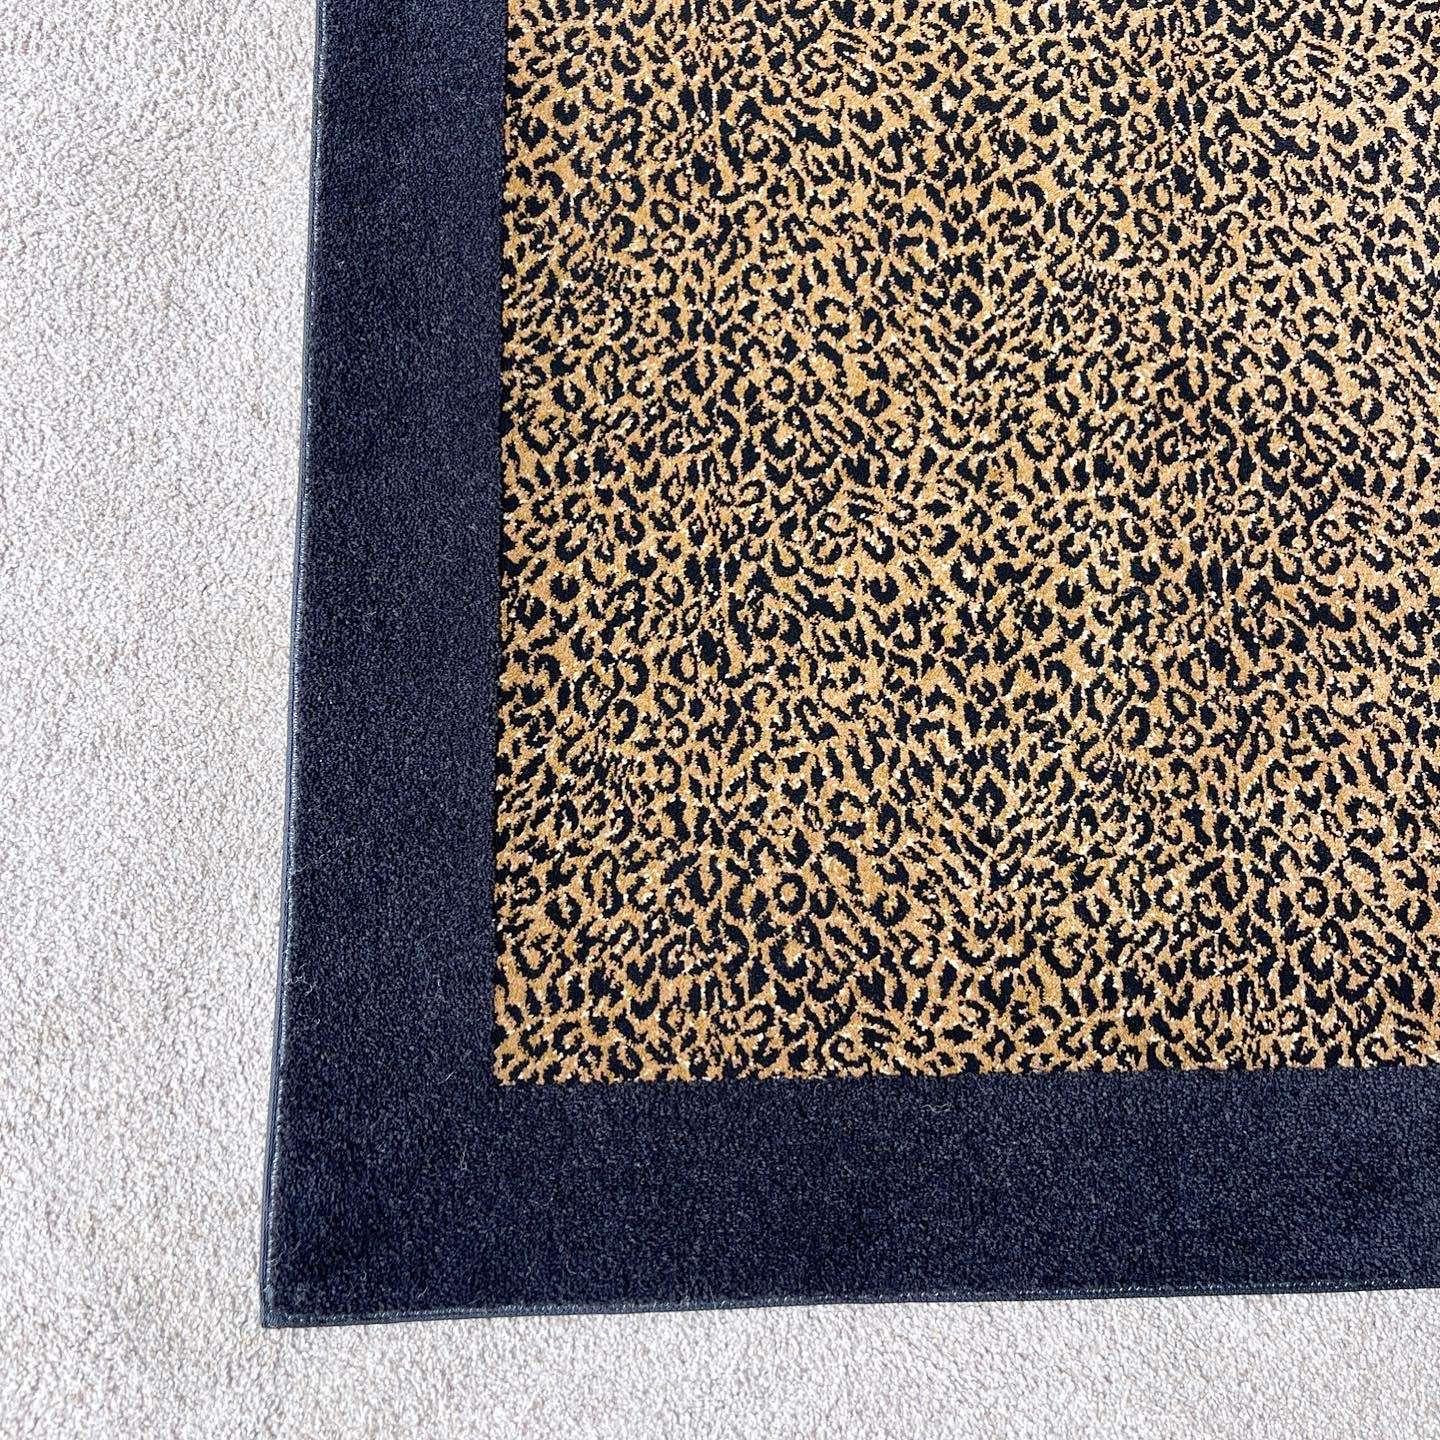 Post-Modern Vintage Black and Leopard Print Rectangular Area Rug For Sale